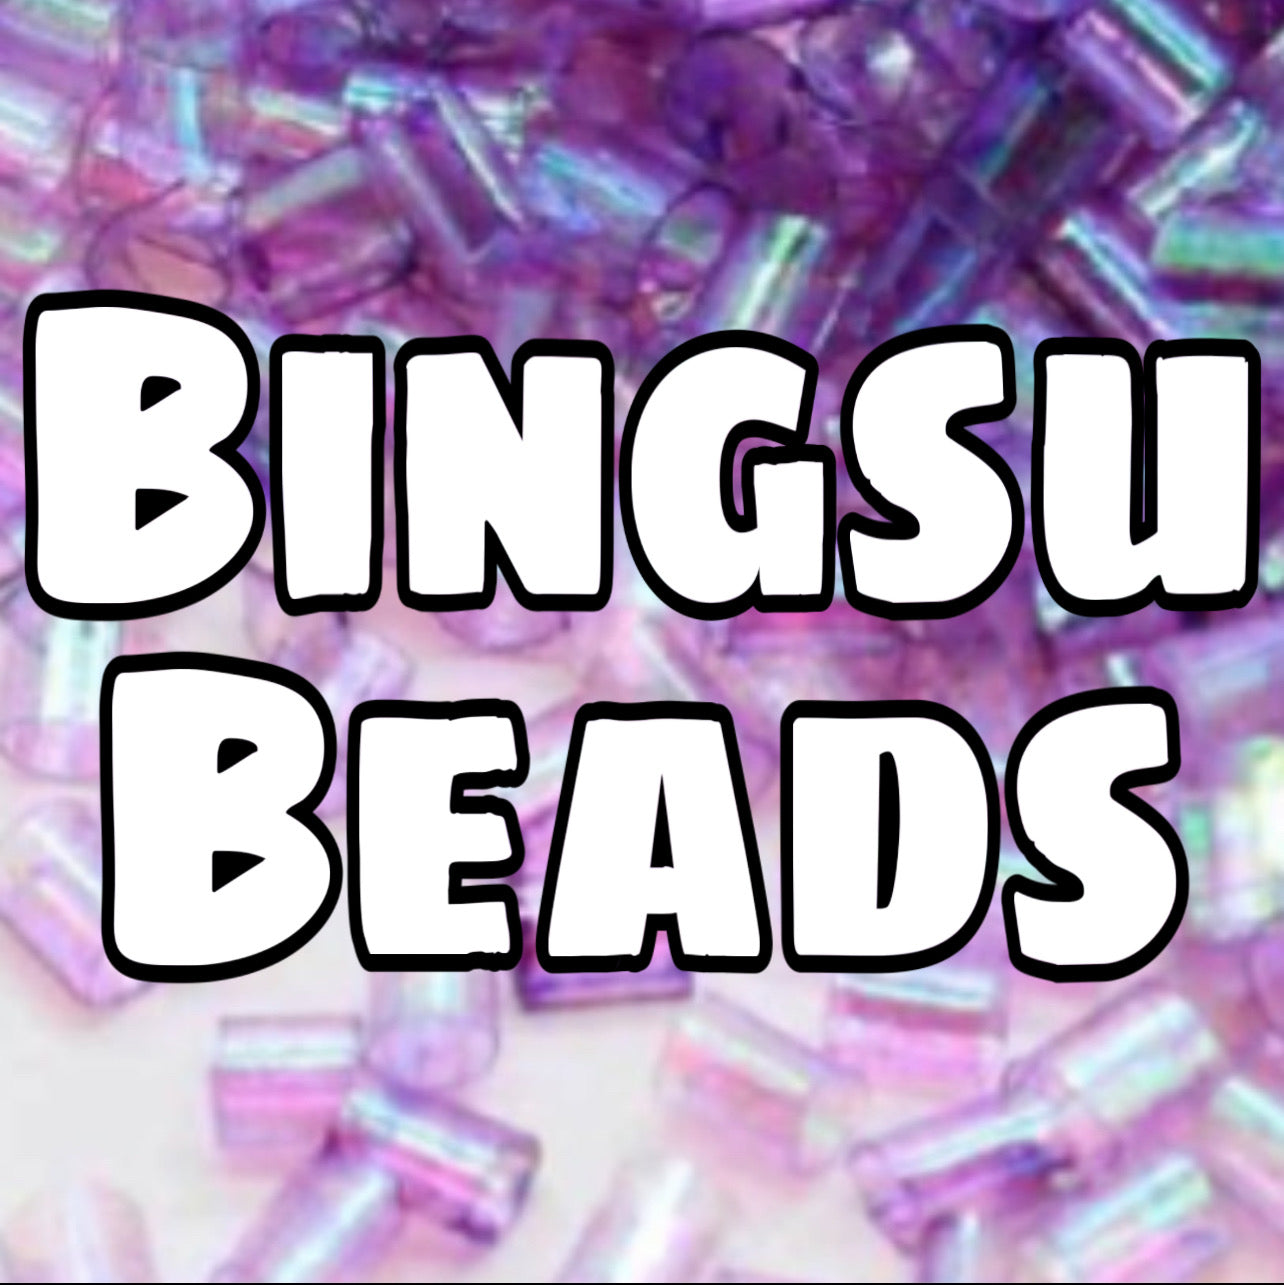 Bingsu beads